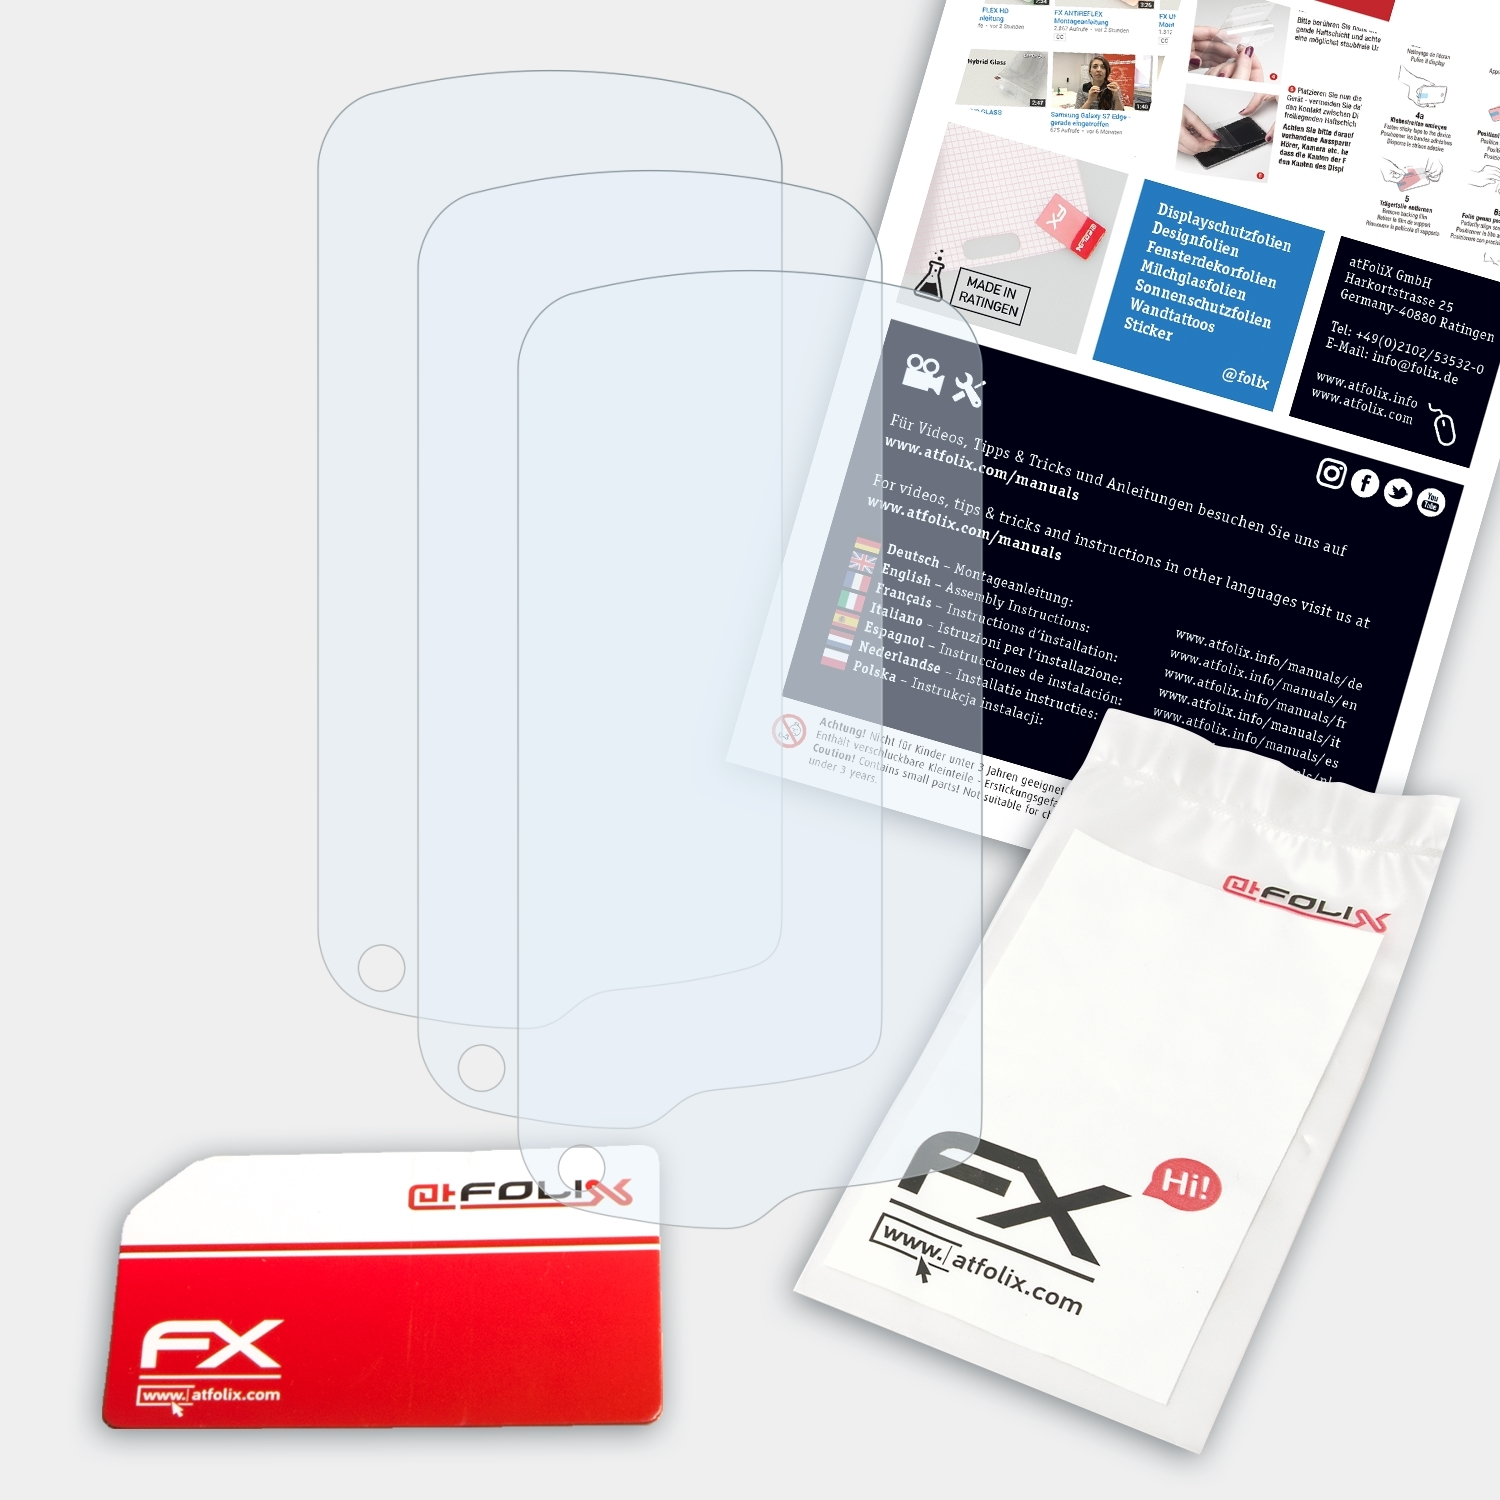 Monterra) Garmin 3x FX-Clear ATFOLIX Displayschutz(für